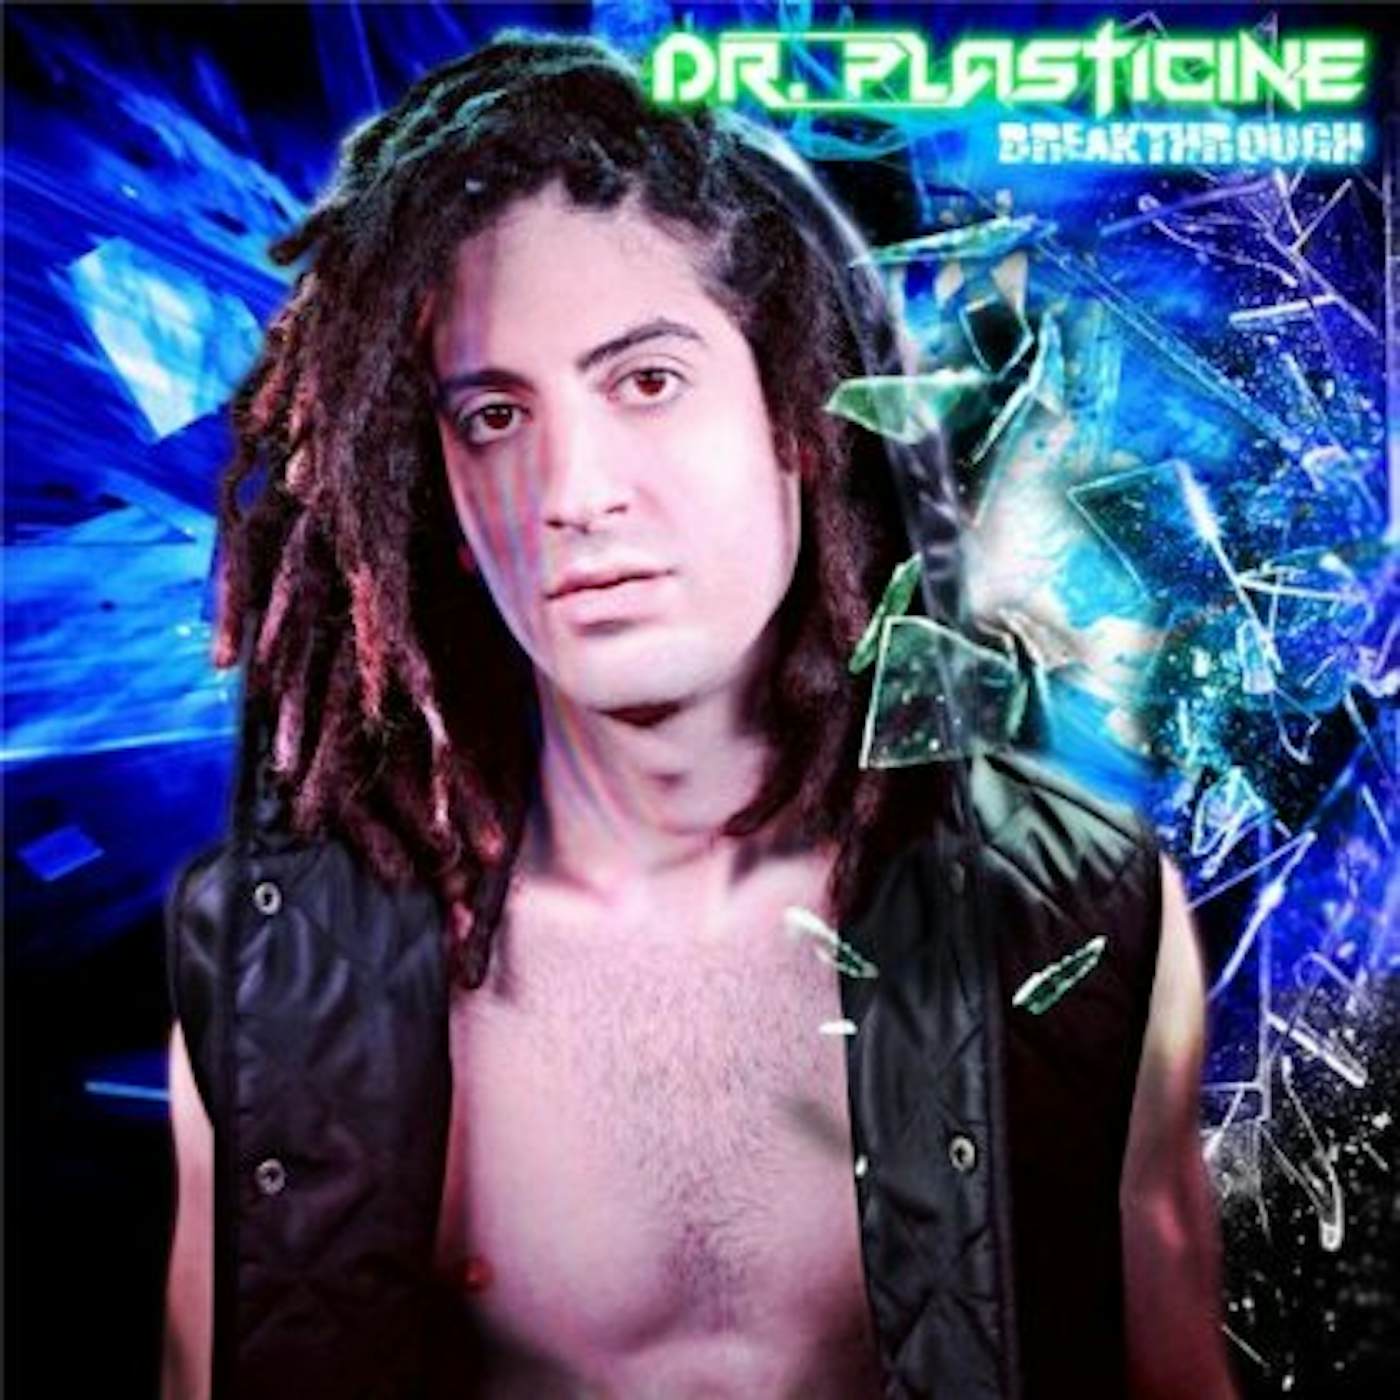 Dr. Plasticine BREAKTHROUGH CD